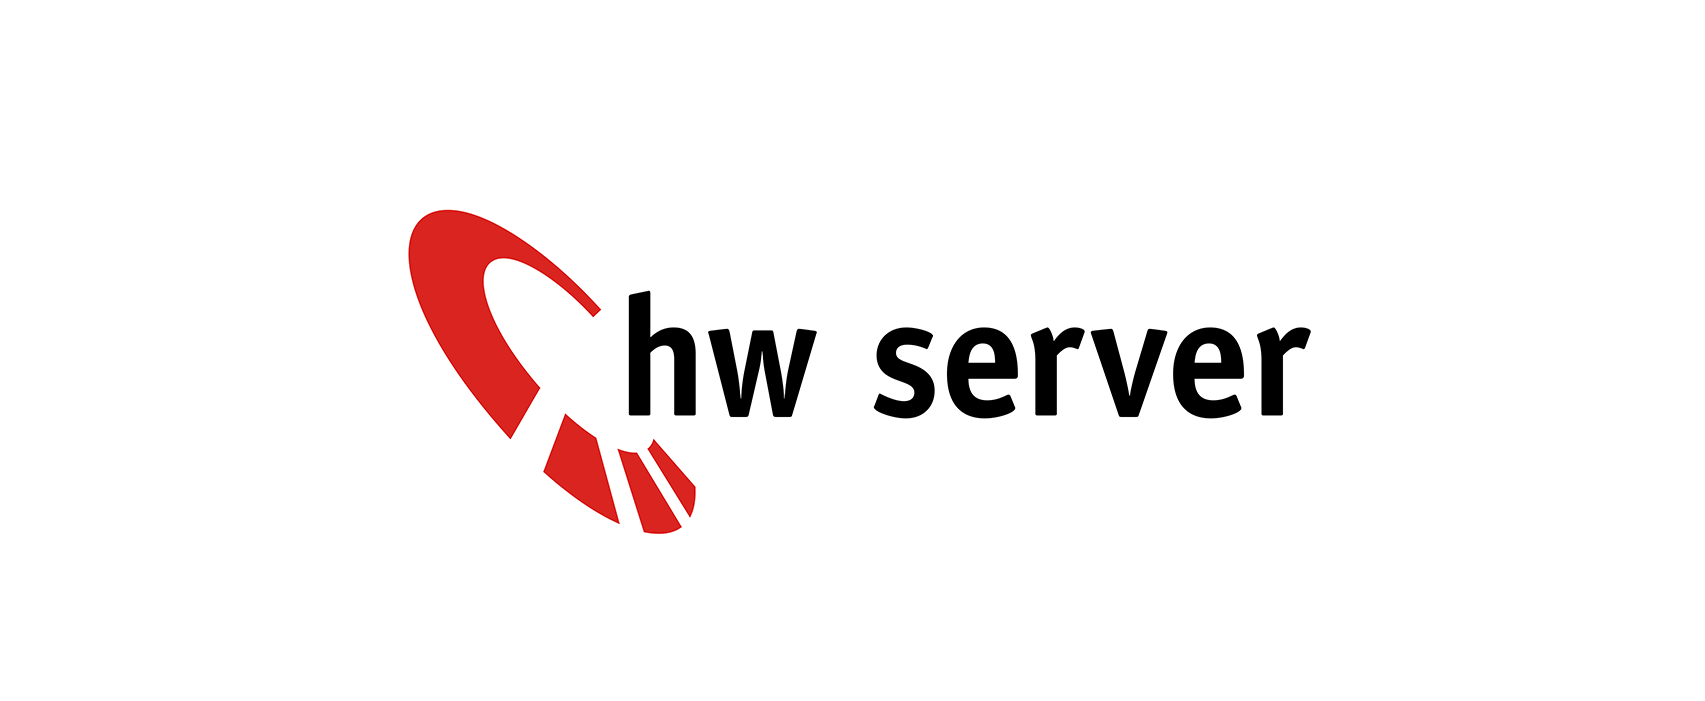 HW server